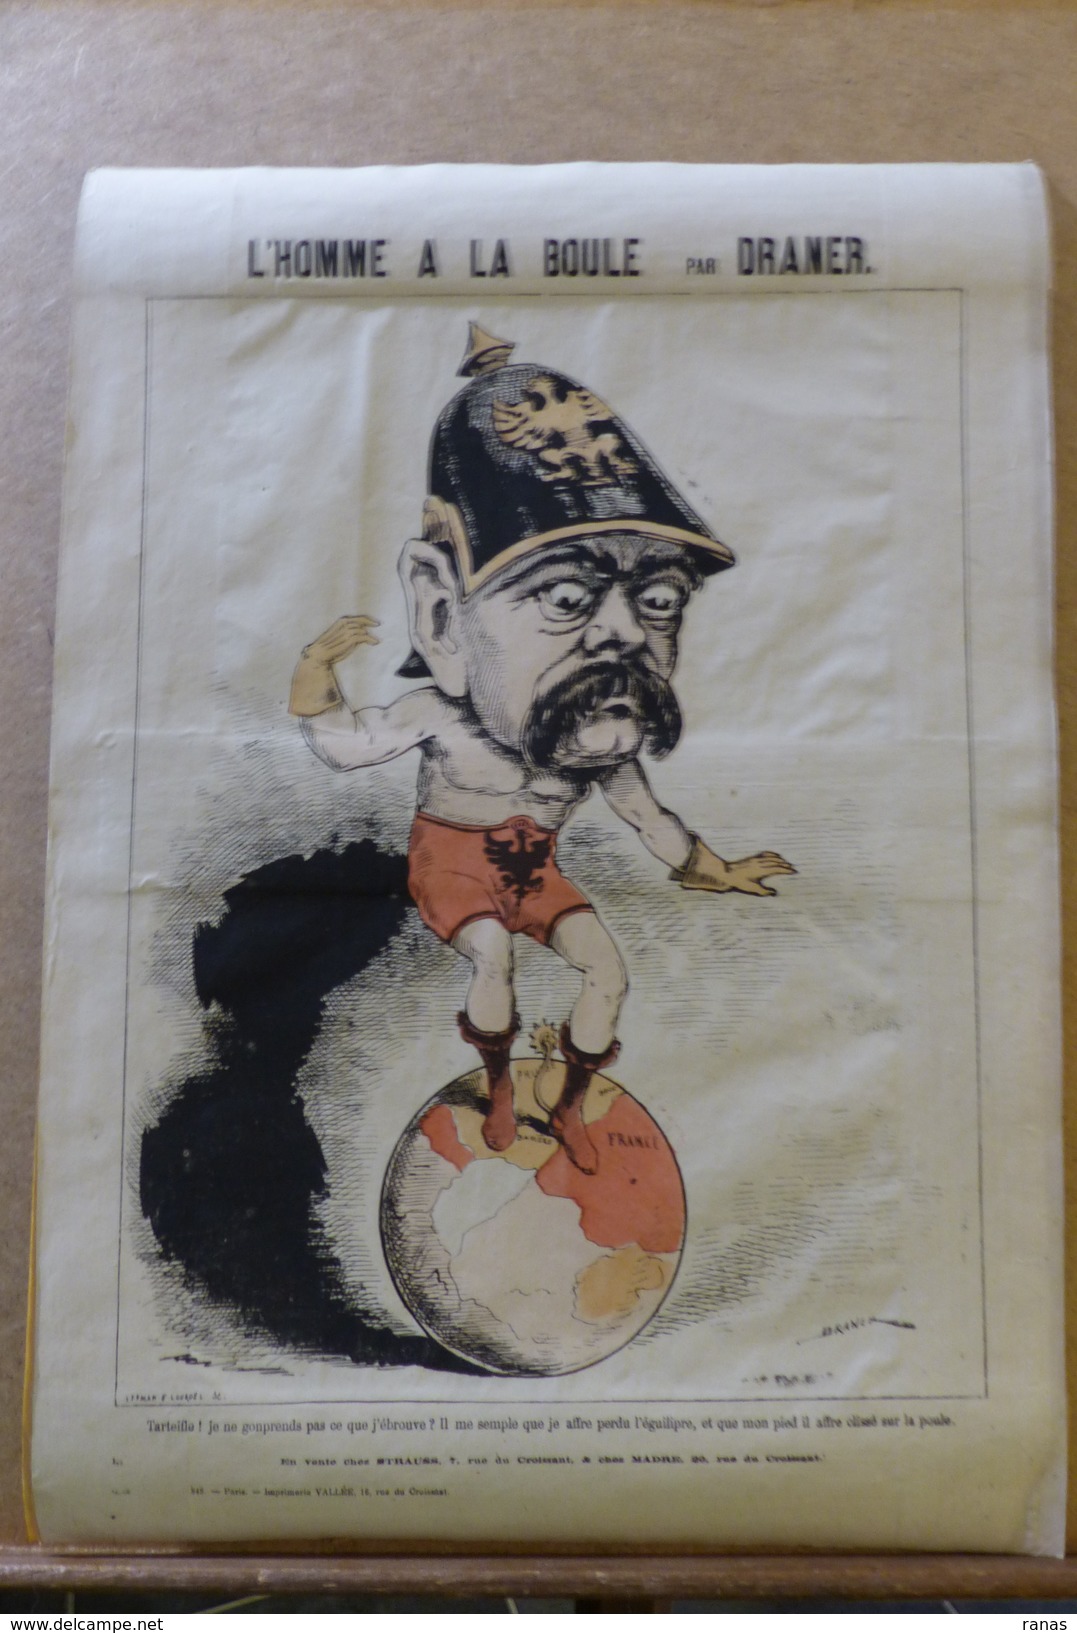 Estampe Gravure Satirique Caricature D'époque 1870 Bismarck Par DRANER Planisphère 43,5 X 31 - Prints & Engravings